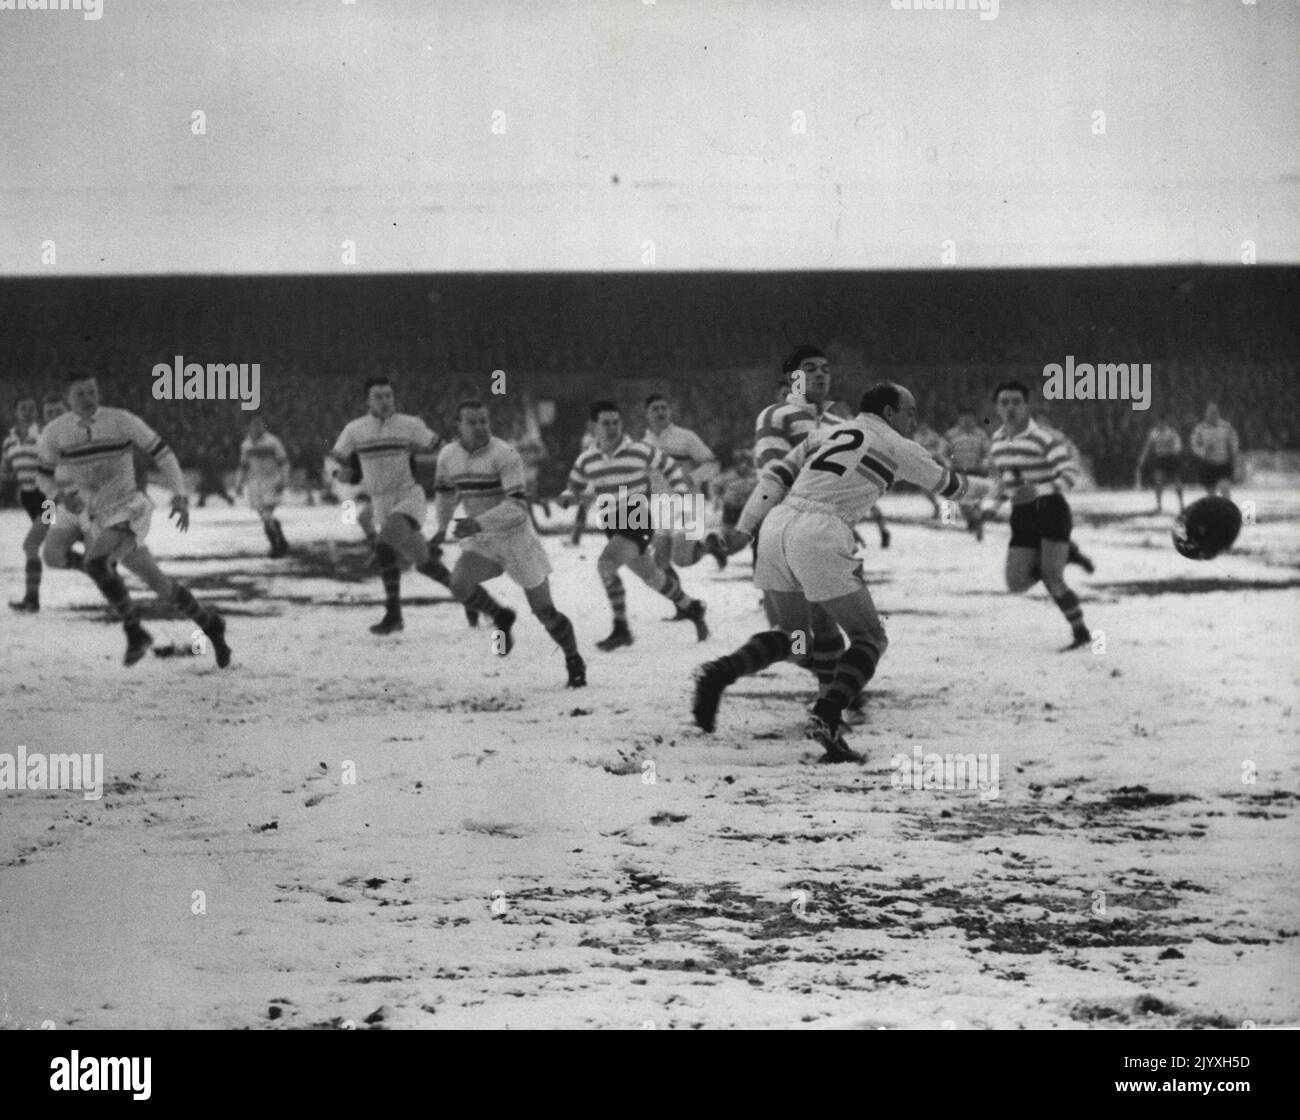 Oldham gegen Warrington - Rugby League im ***** Warrington gewinnt die Spitze der Liga, indem er Oldham bei Oldham Davies A besiegt. (Oldham) steht dem australischen Flügelspieler Barrow (Oldham) gegenüber, wenn er von Brian Bevan (Warrington) gedrückt wird. 15. Januar 1955. Stockfoto